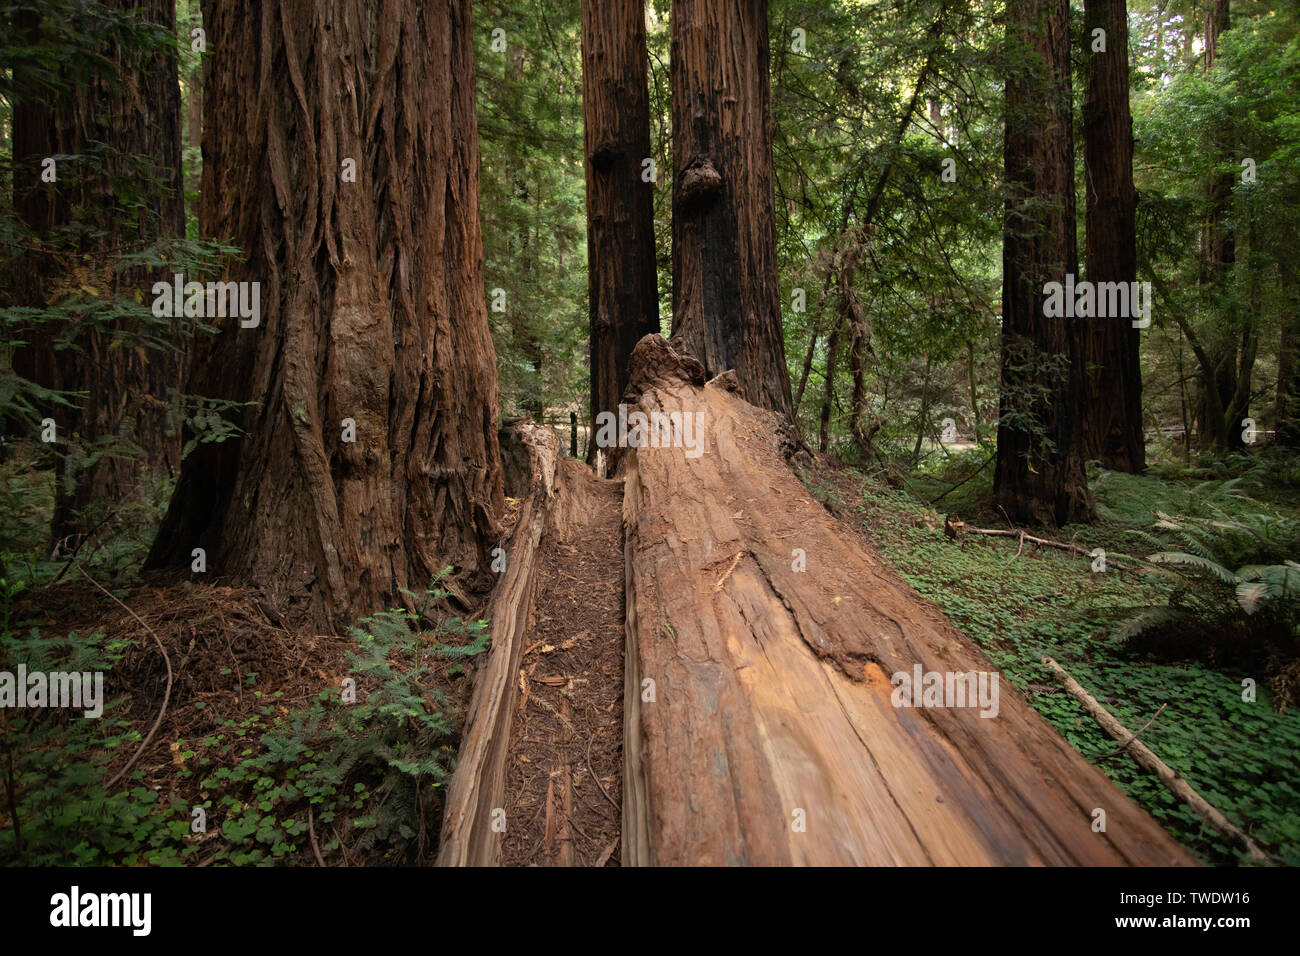 Grand arbre Séquoia tombé dans Muir Woods National Park, en Californie. Muir Woods est connu pour les immenses séquoias juste au nord de San Francisco. Banque D'Images